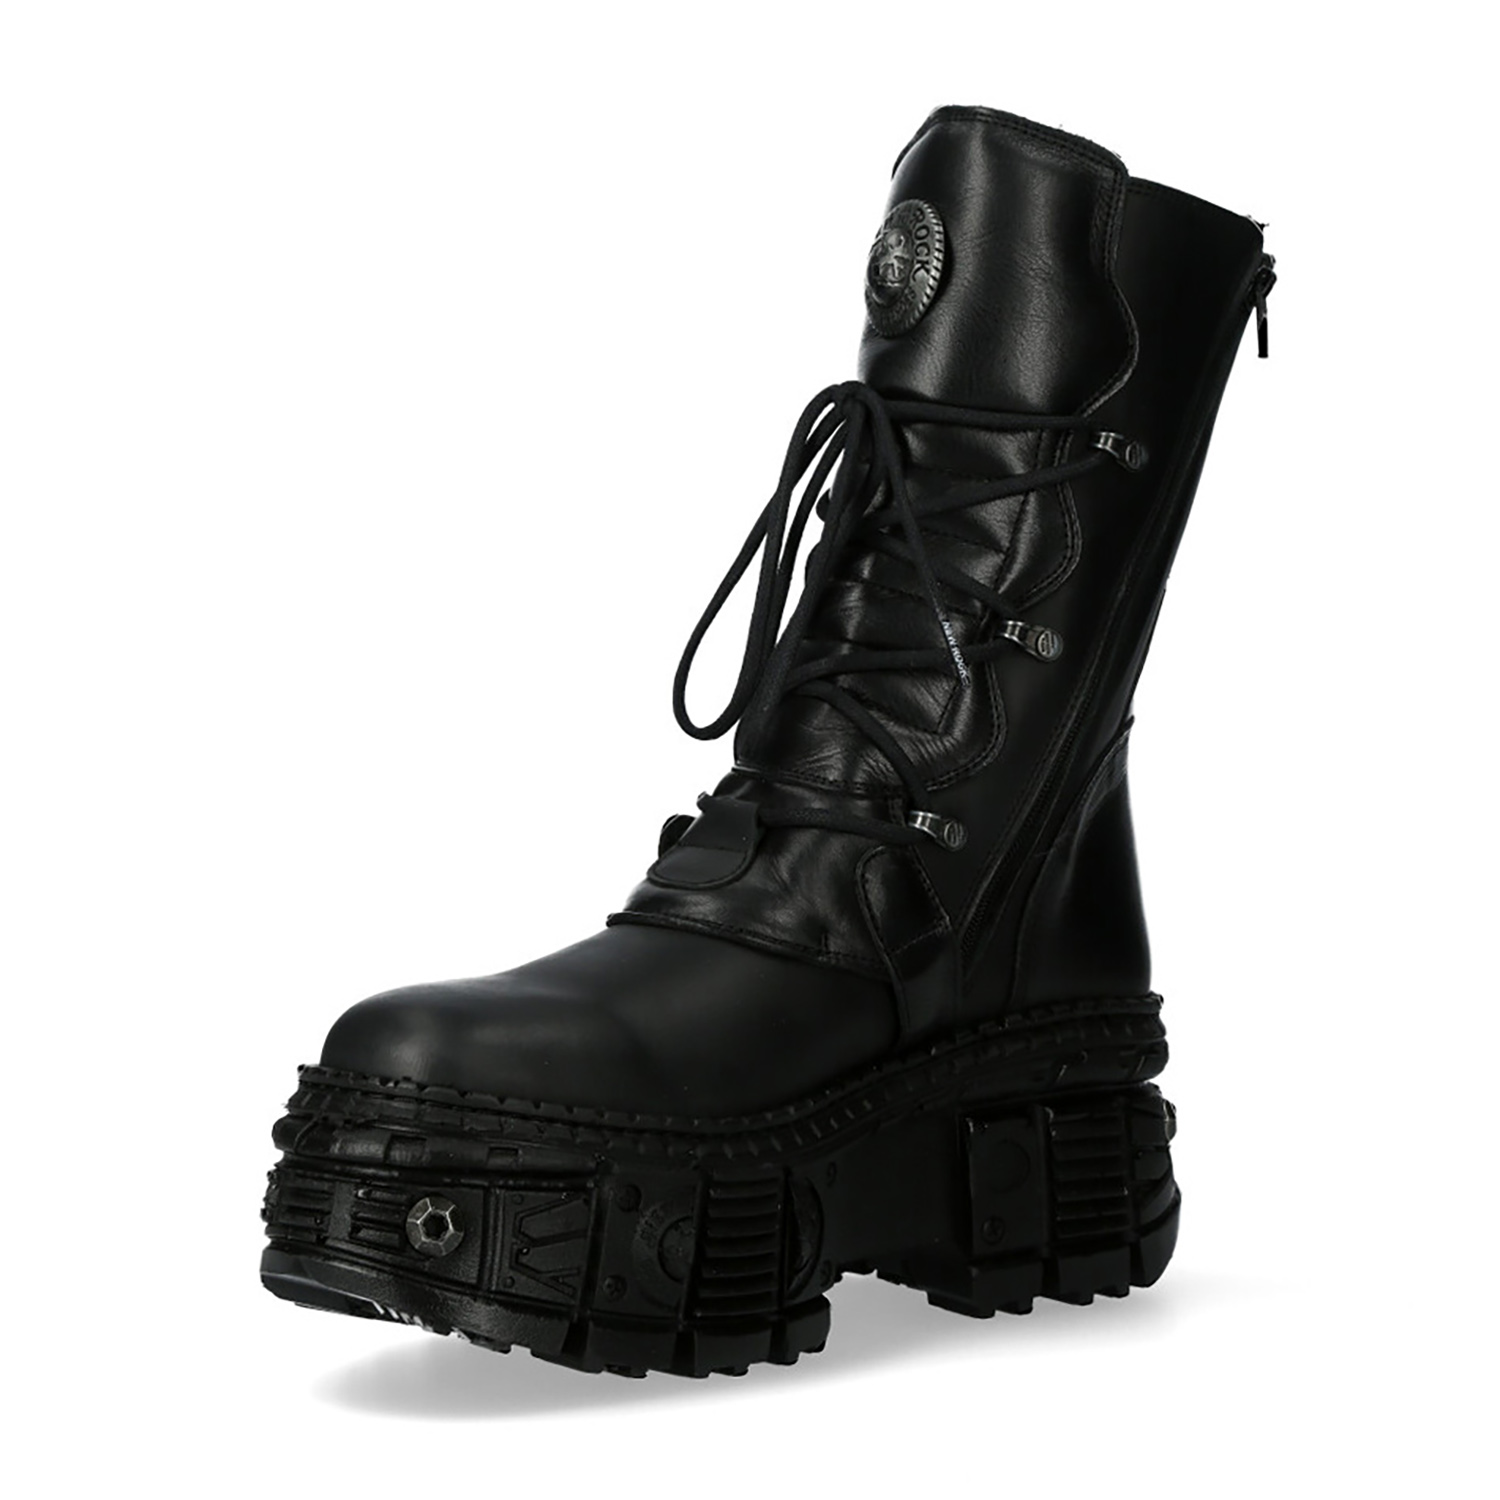 Black New Rock Tank Platform Boots M.WALL373-S11 • the dark store™